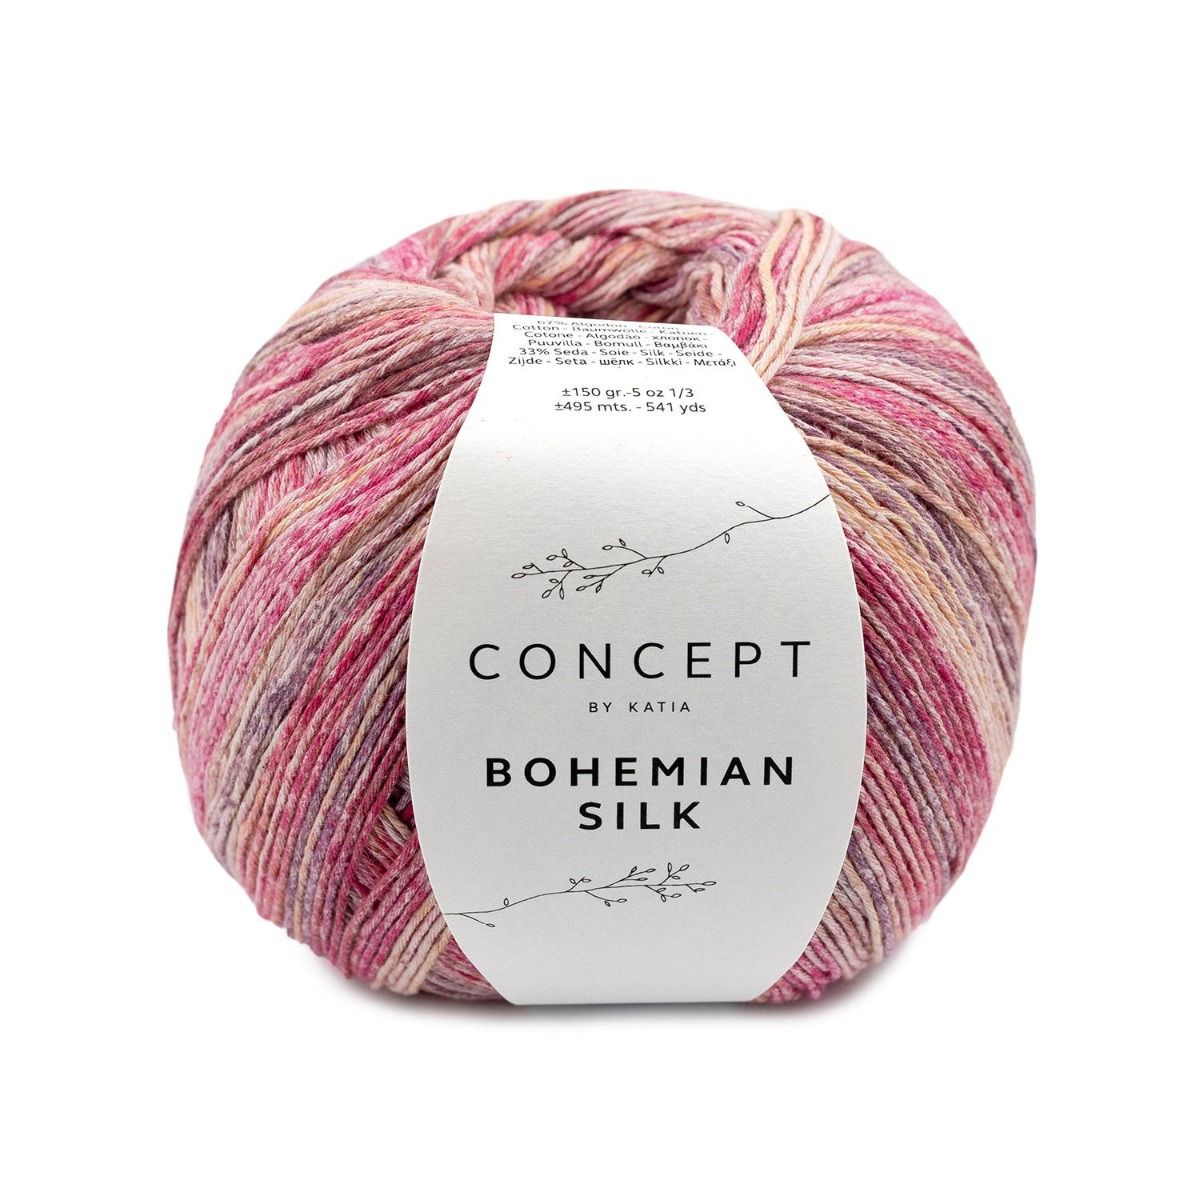 bohemian silk yarn